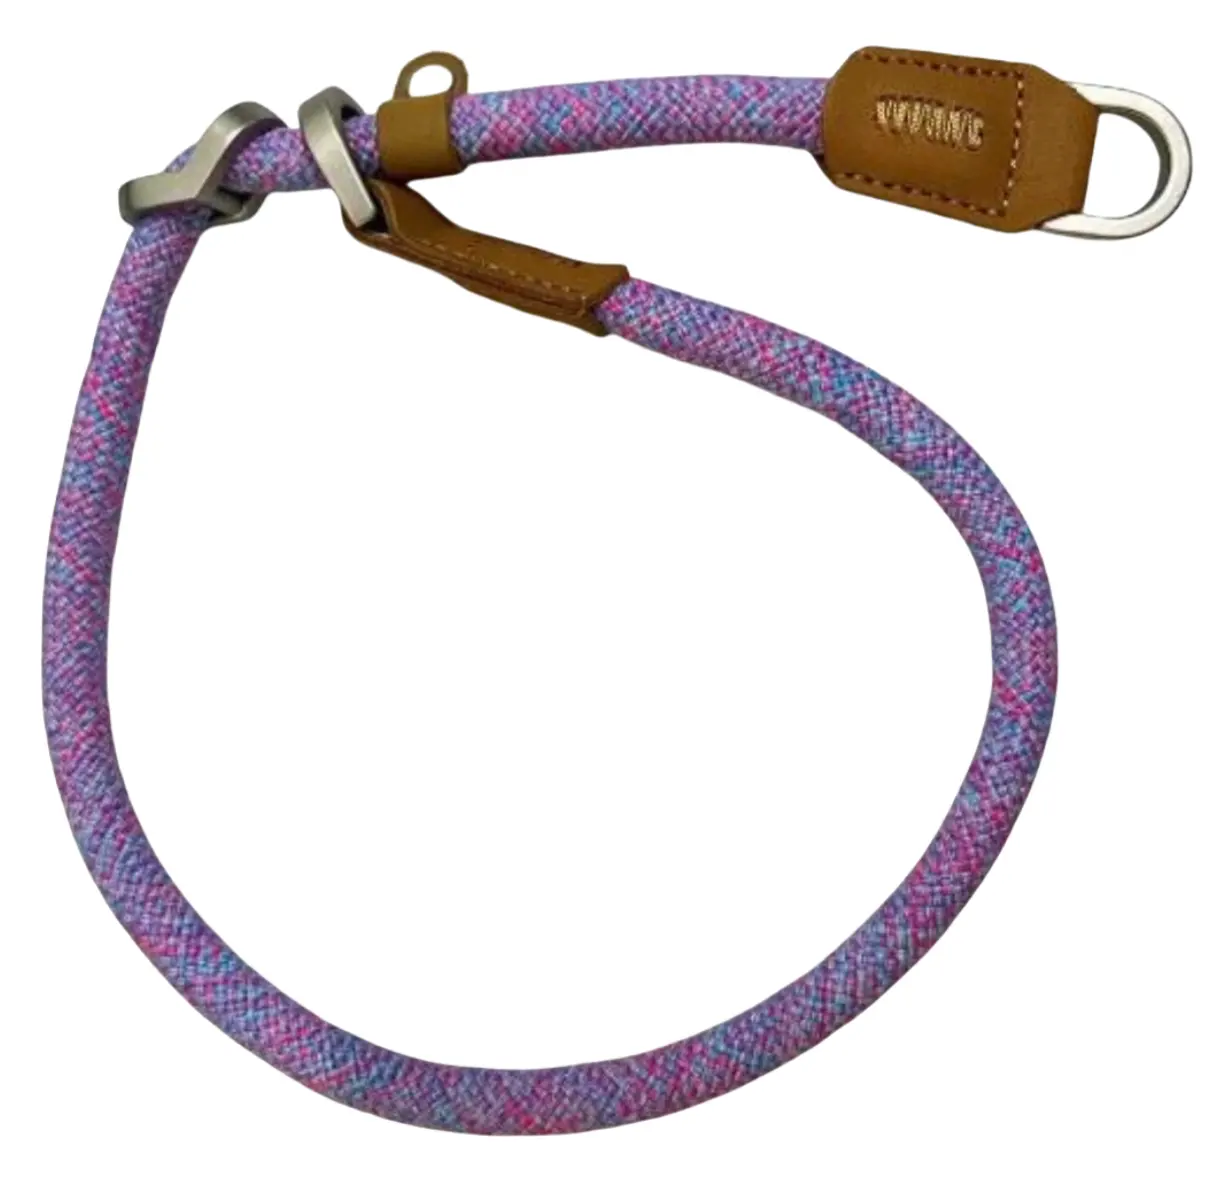 Nuevo Collar de perro mascota de cuerda redonda P de colores mezclados con hebilla de Metal de cuero de nailon de lujo ajustable personalizado